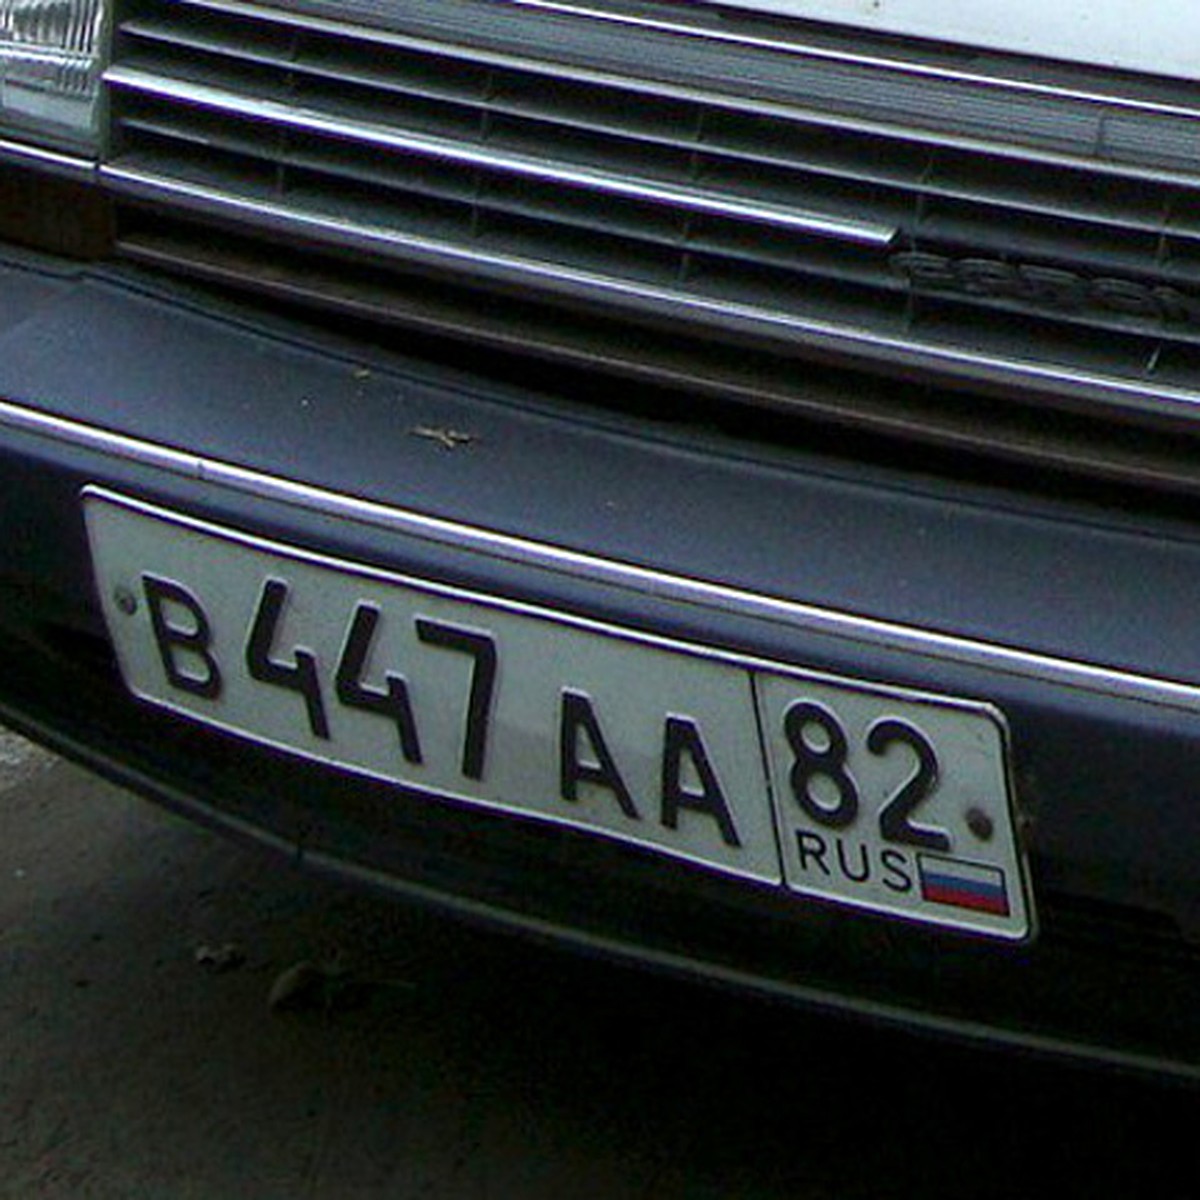 82 регион россии на машине. Гос номер 82 регион. Крым номера автомобилей. Номера Крыма автомобильные. Крымские номера машин.